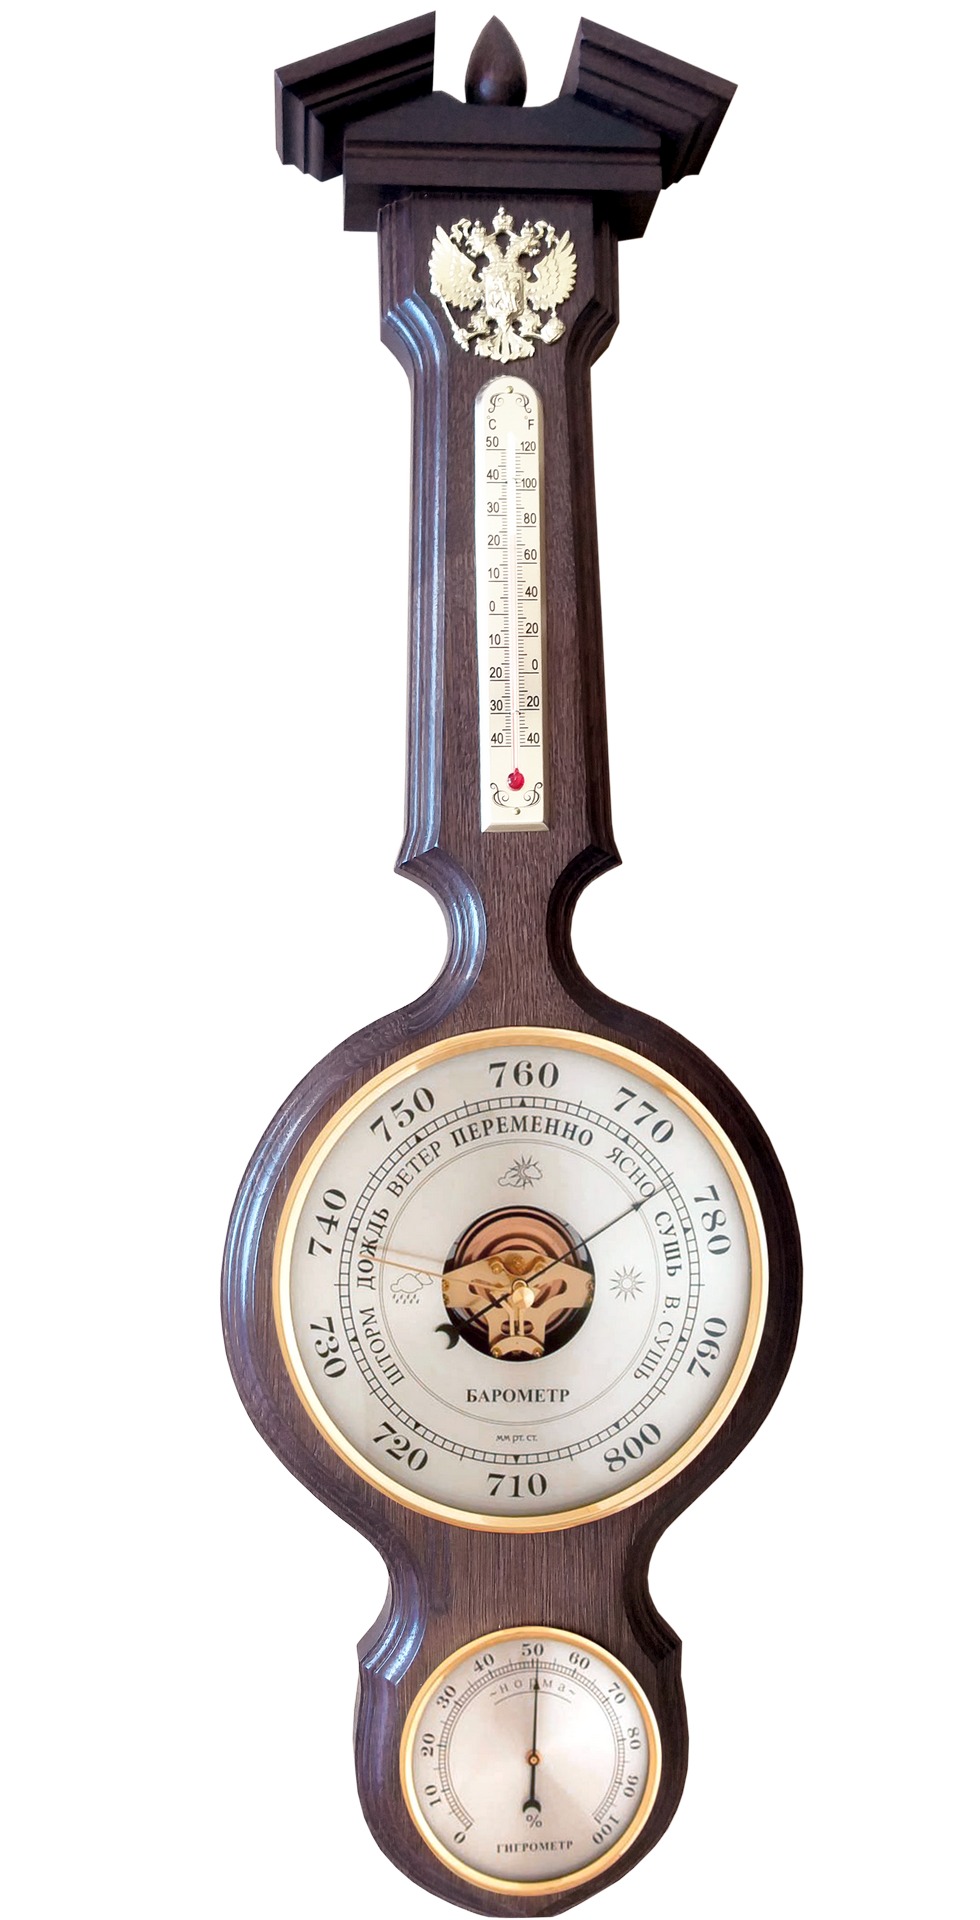 Бытовая метеостанция, бм-96 массив дуба (смич) герб рф, барометр